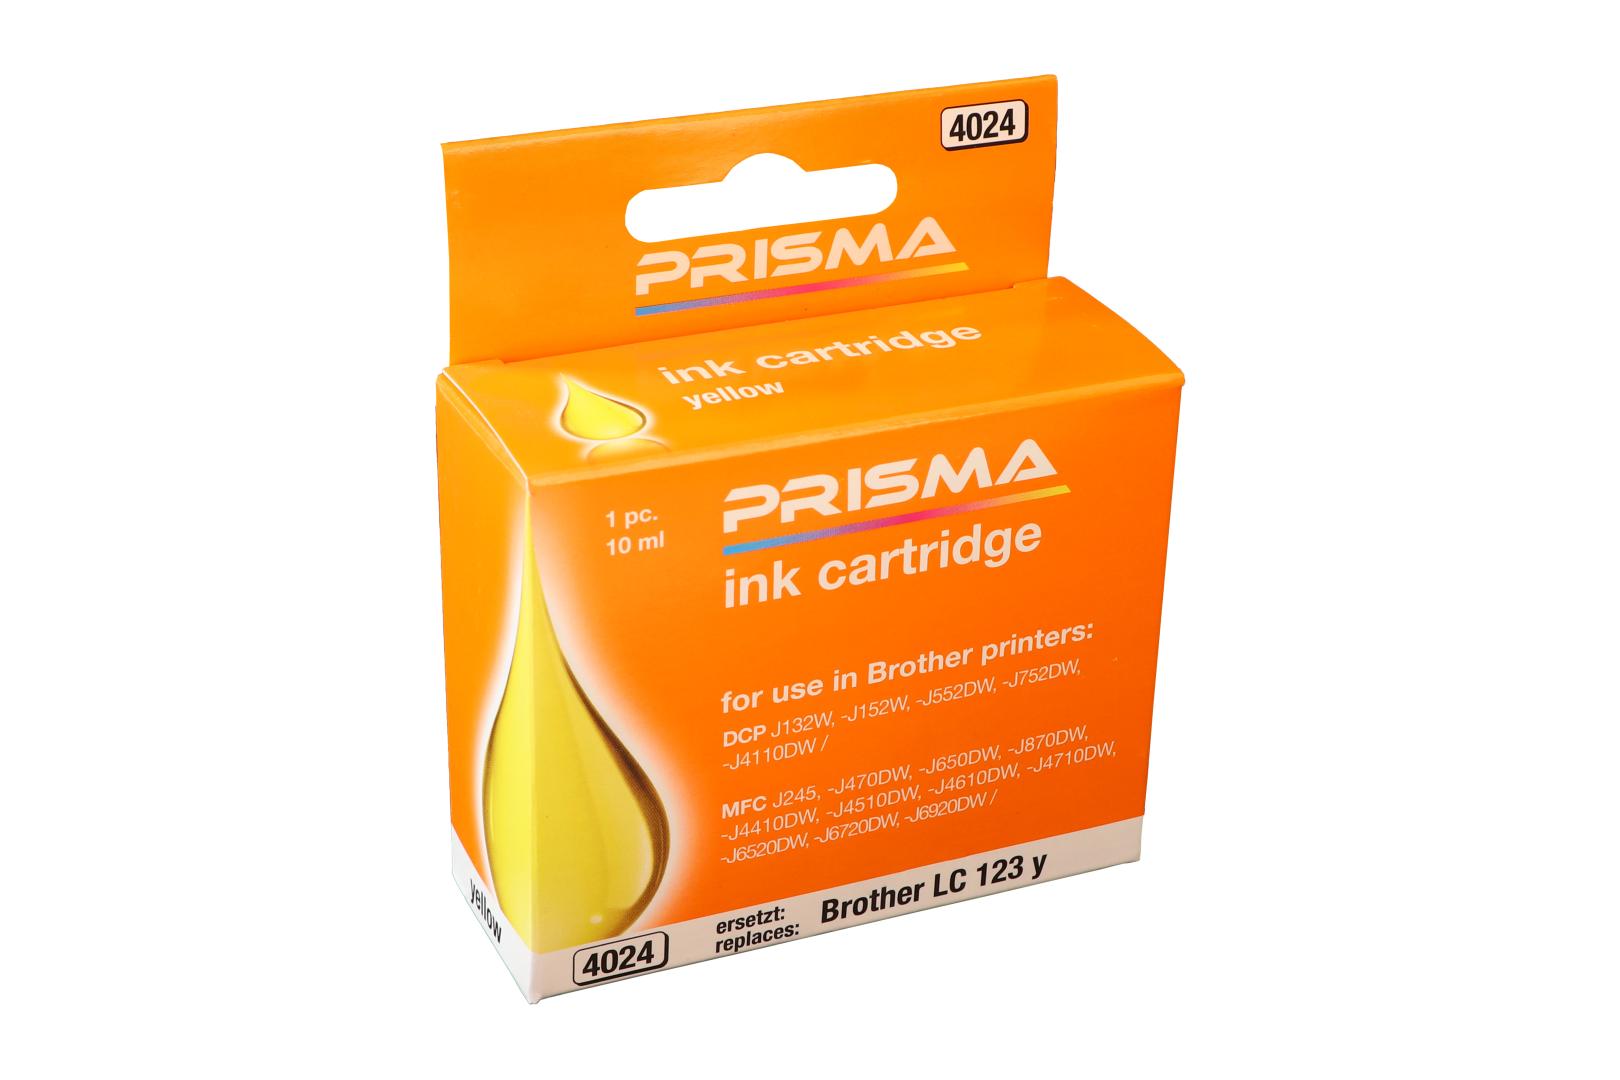 PRISMA 4024 Druckerpatrone für Brother Tintenstrahldrucker, yellow, 10 ml